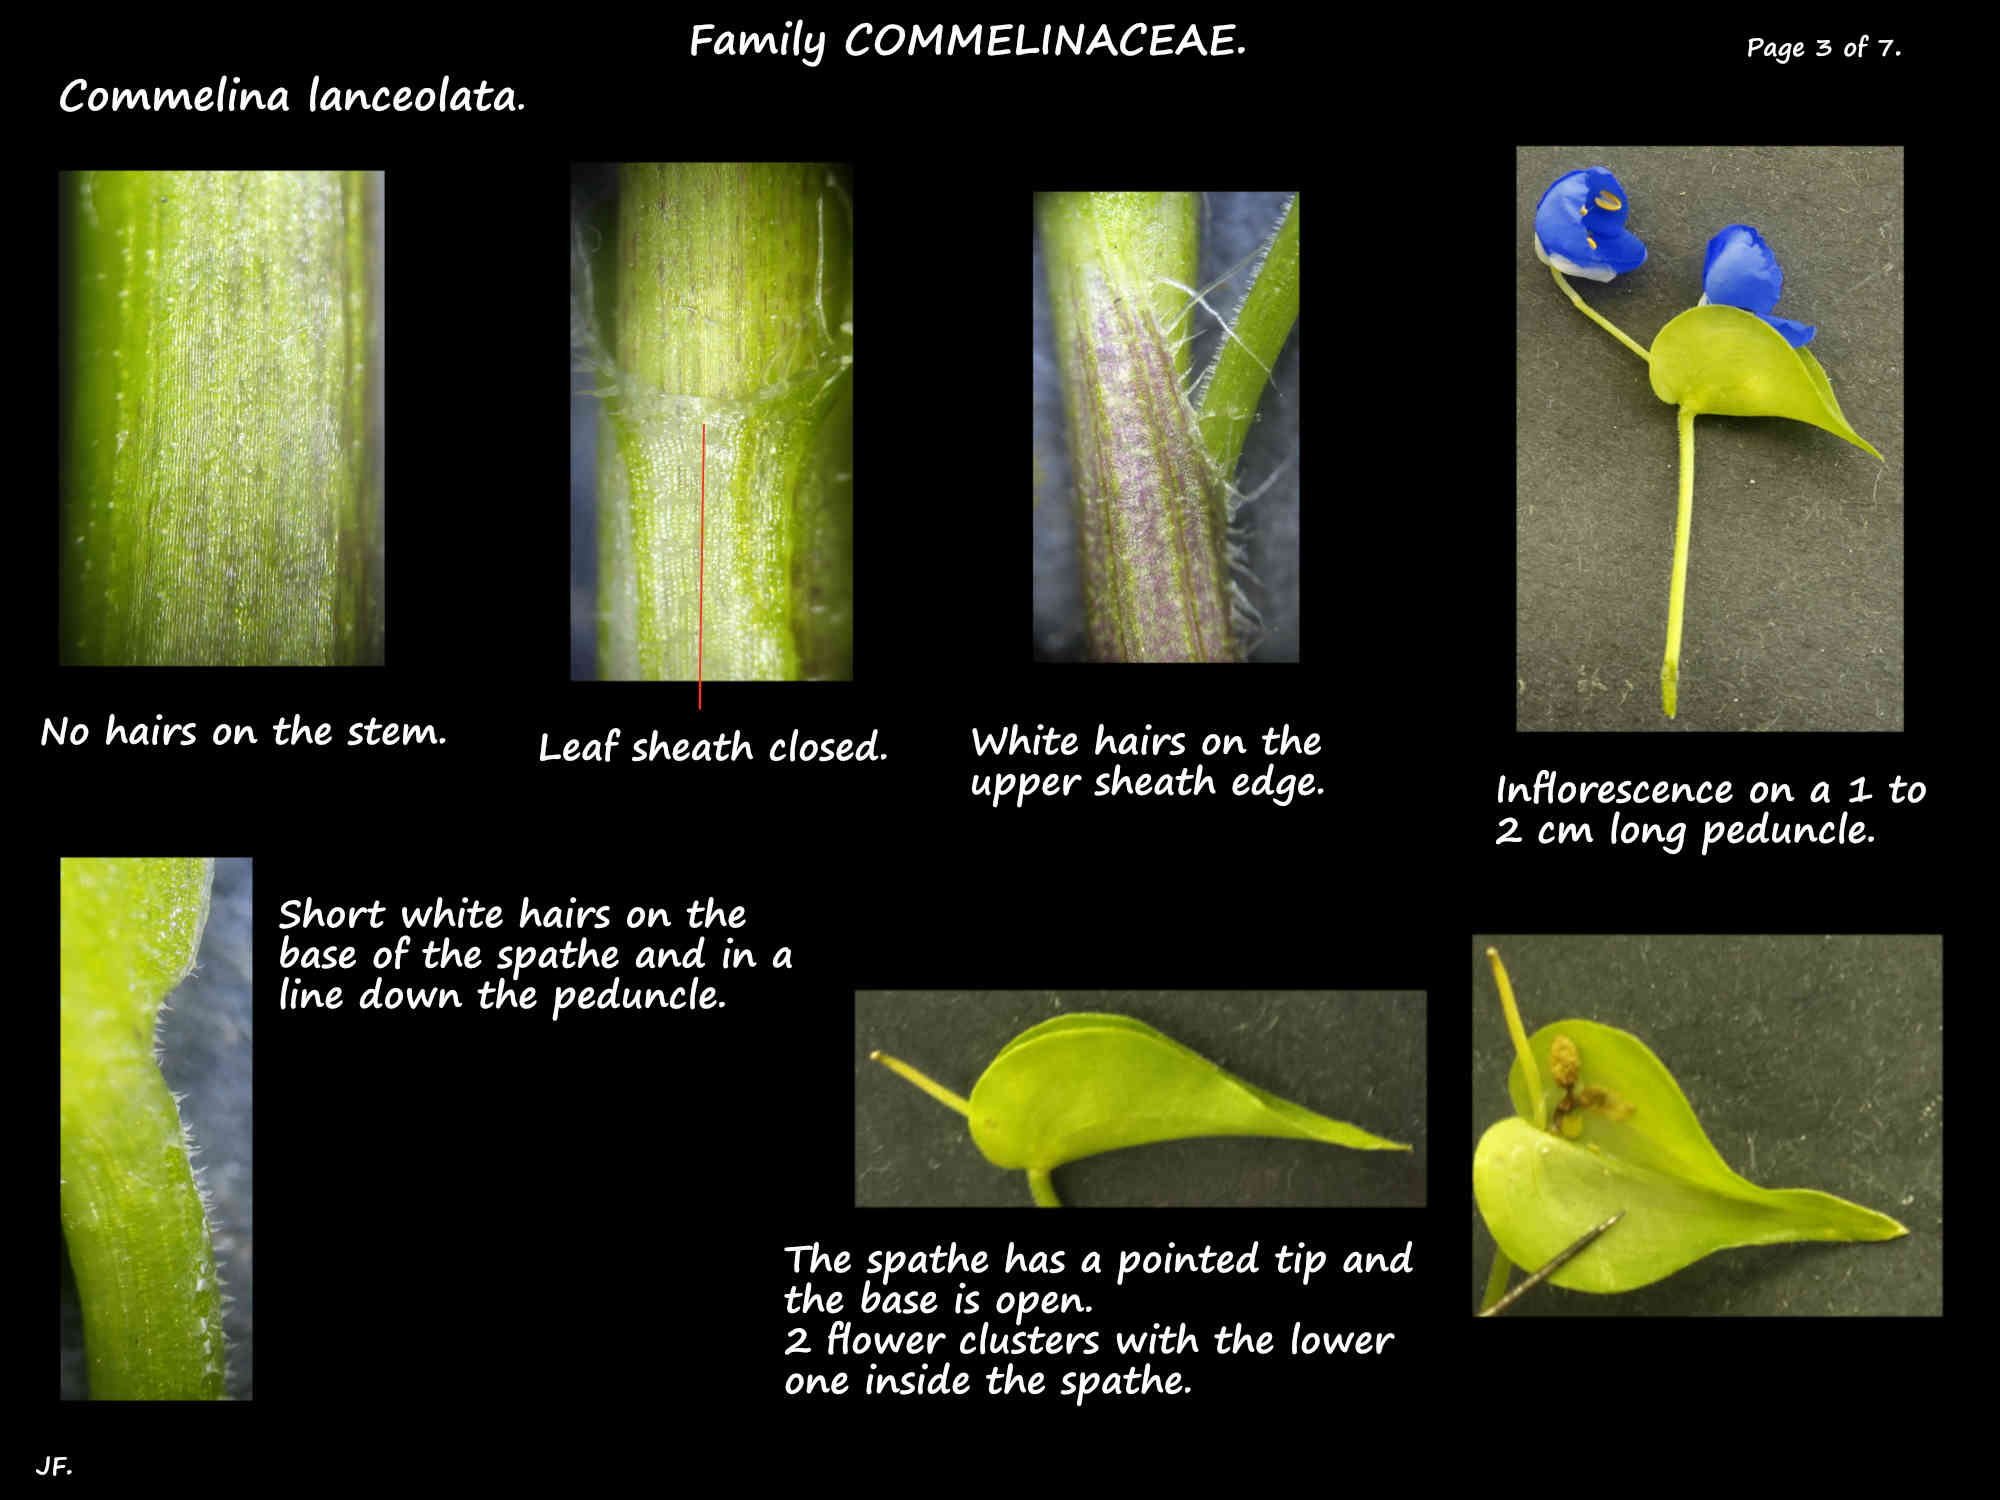 3 The leaf sheaths & spathes of Commelina lanceolata